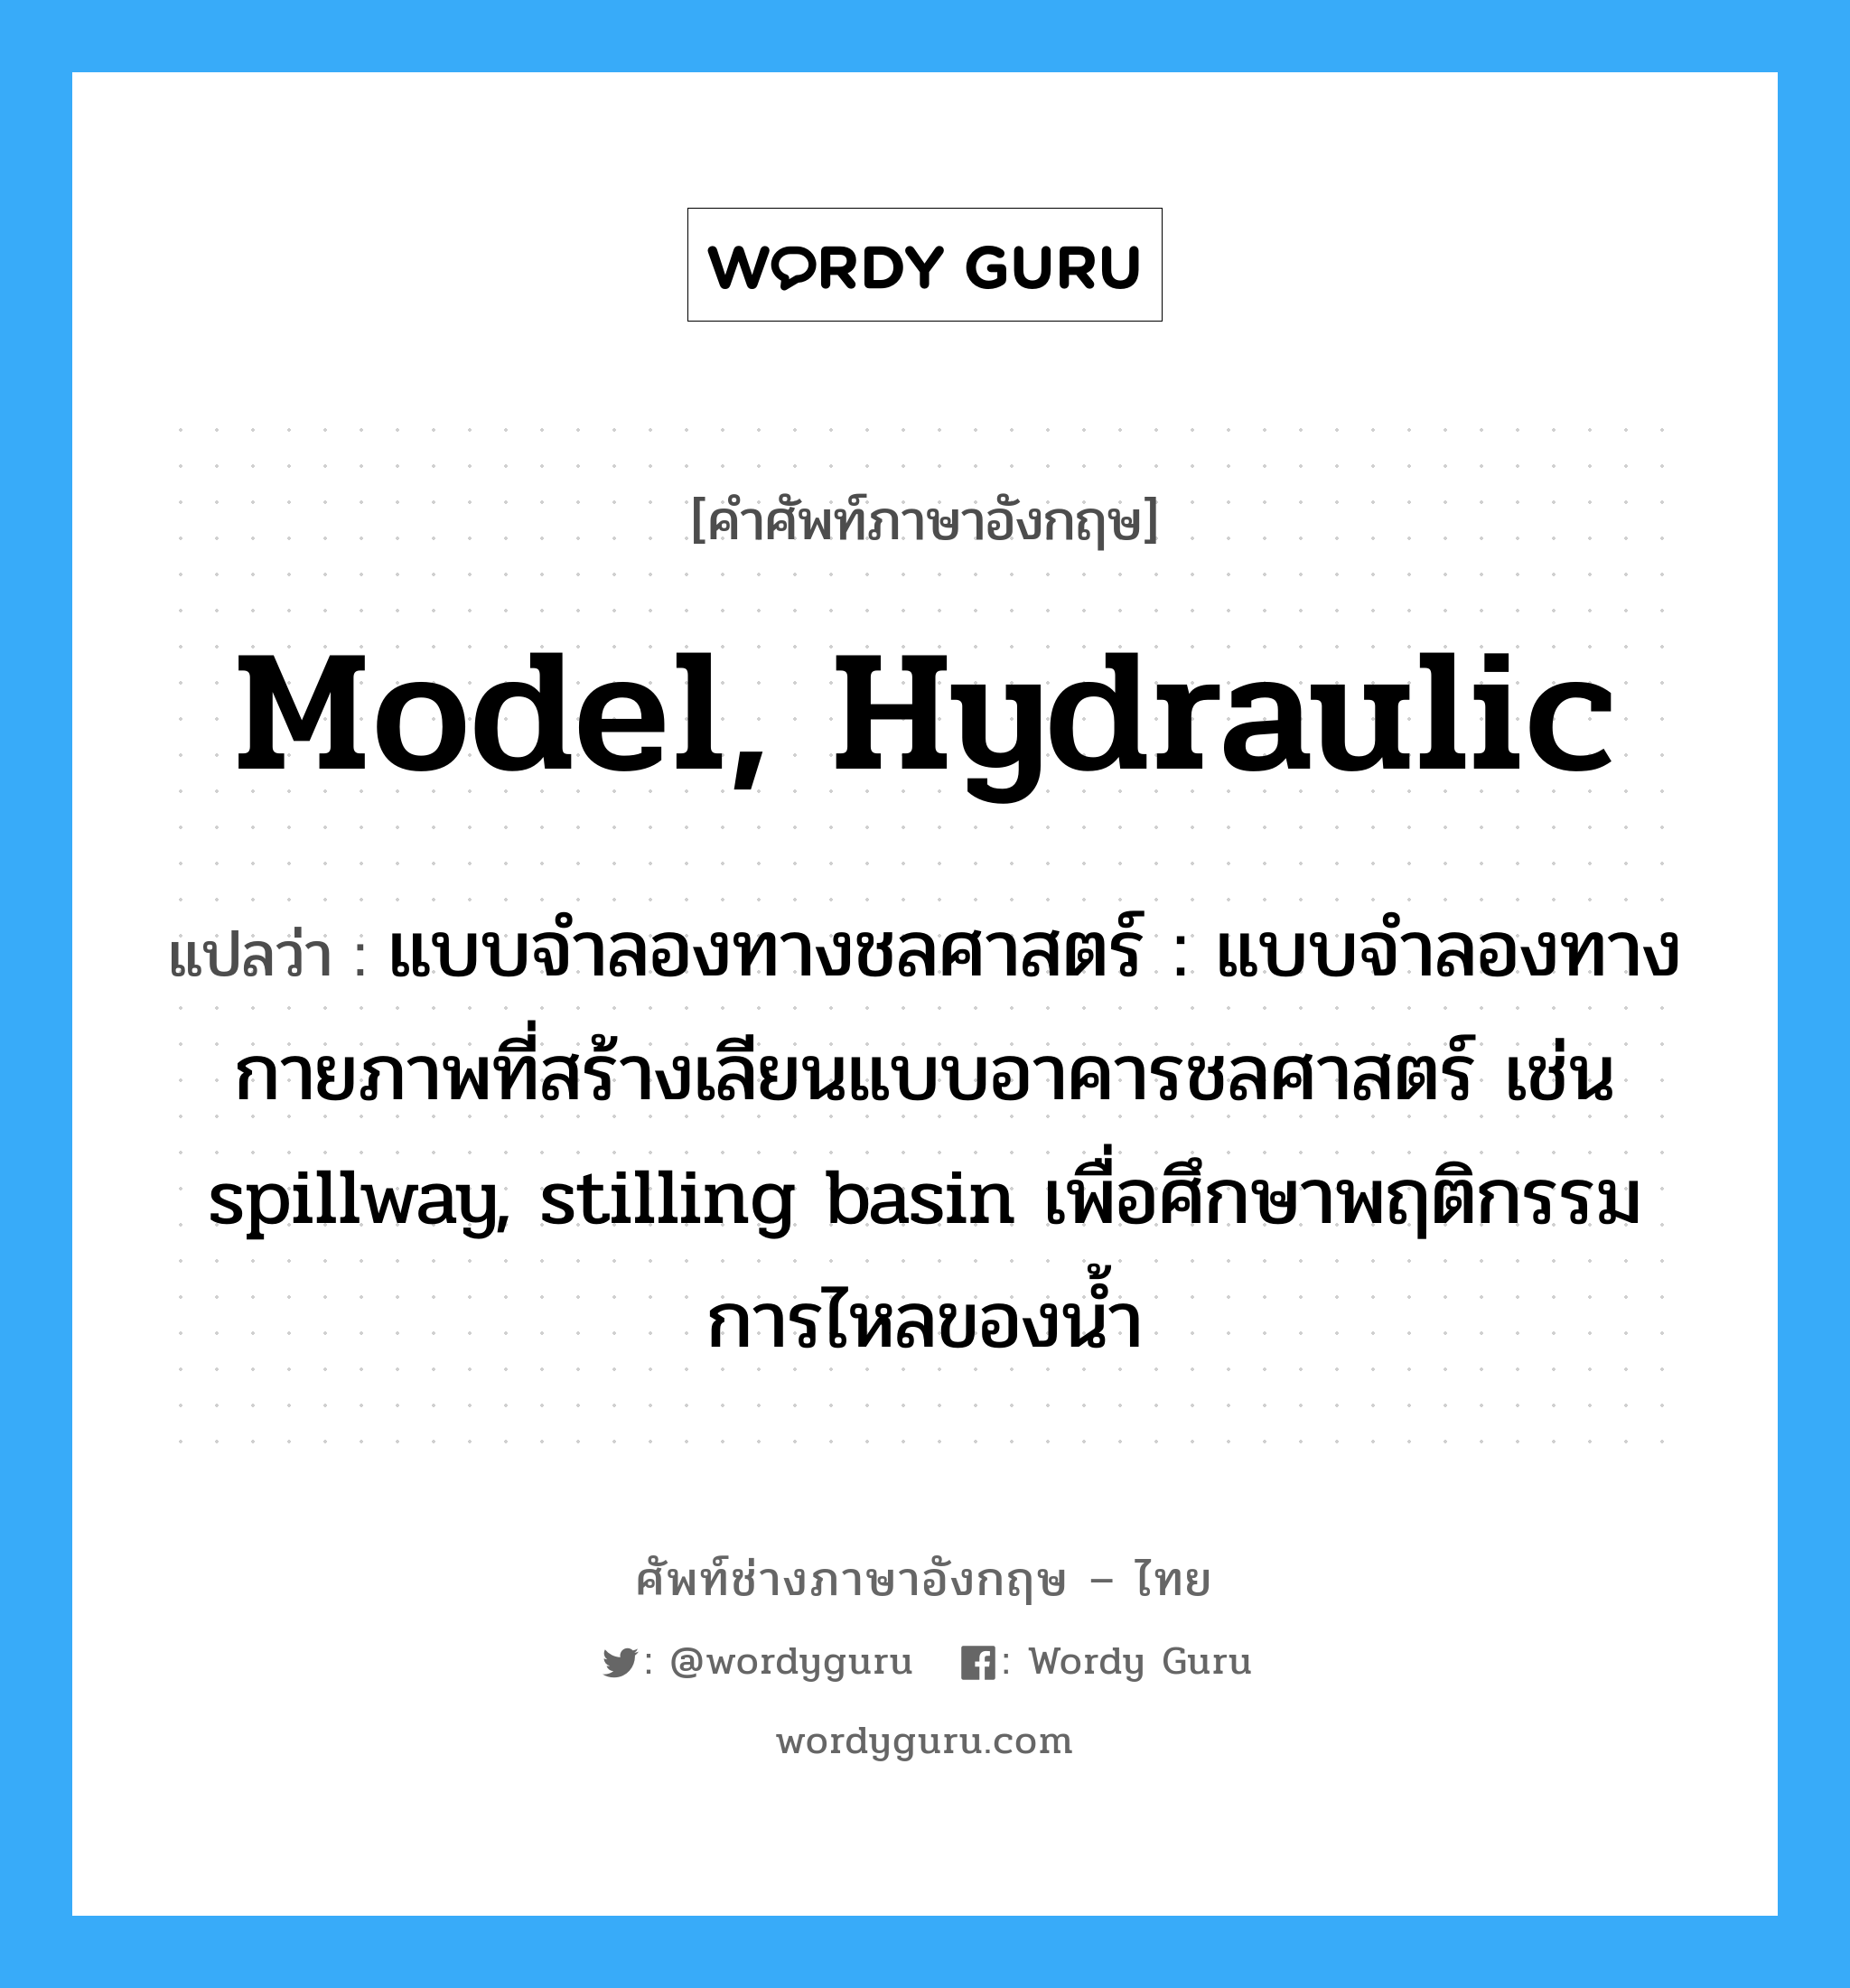 model, hydraulic แปลว่า?, คำศัพท์ช่างภาษาอังกฤษ - ไทย model, hydraulic คำศัพท์ภาษาอังกฤษ model, hydraulic แปลว่า แบบจำลองทางชลศาสตร์ : แบบจำลองทางกายภาพที่สร้างเลียนแบบอาคารชลศาสตร์ เช่น spillway, stilling basin เพื่อศึกษาพฤติกรรมการไหลของน้ำ